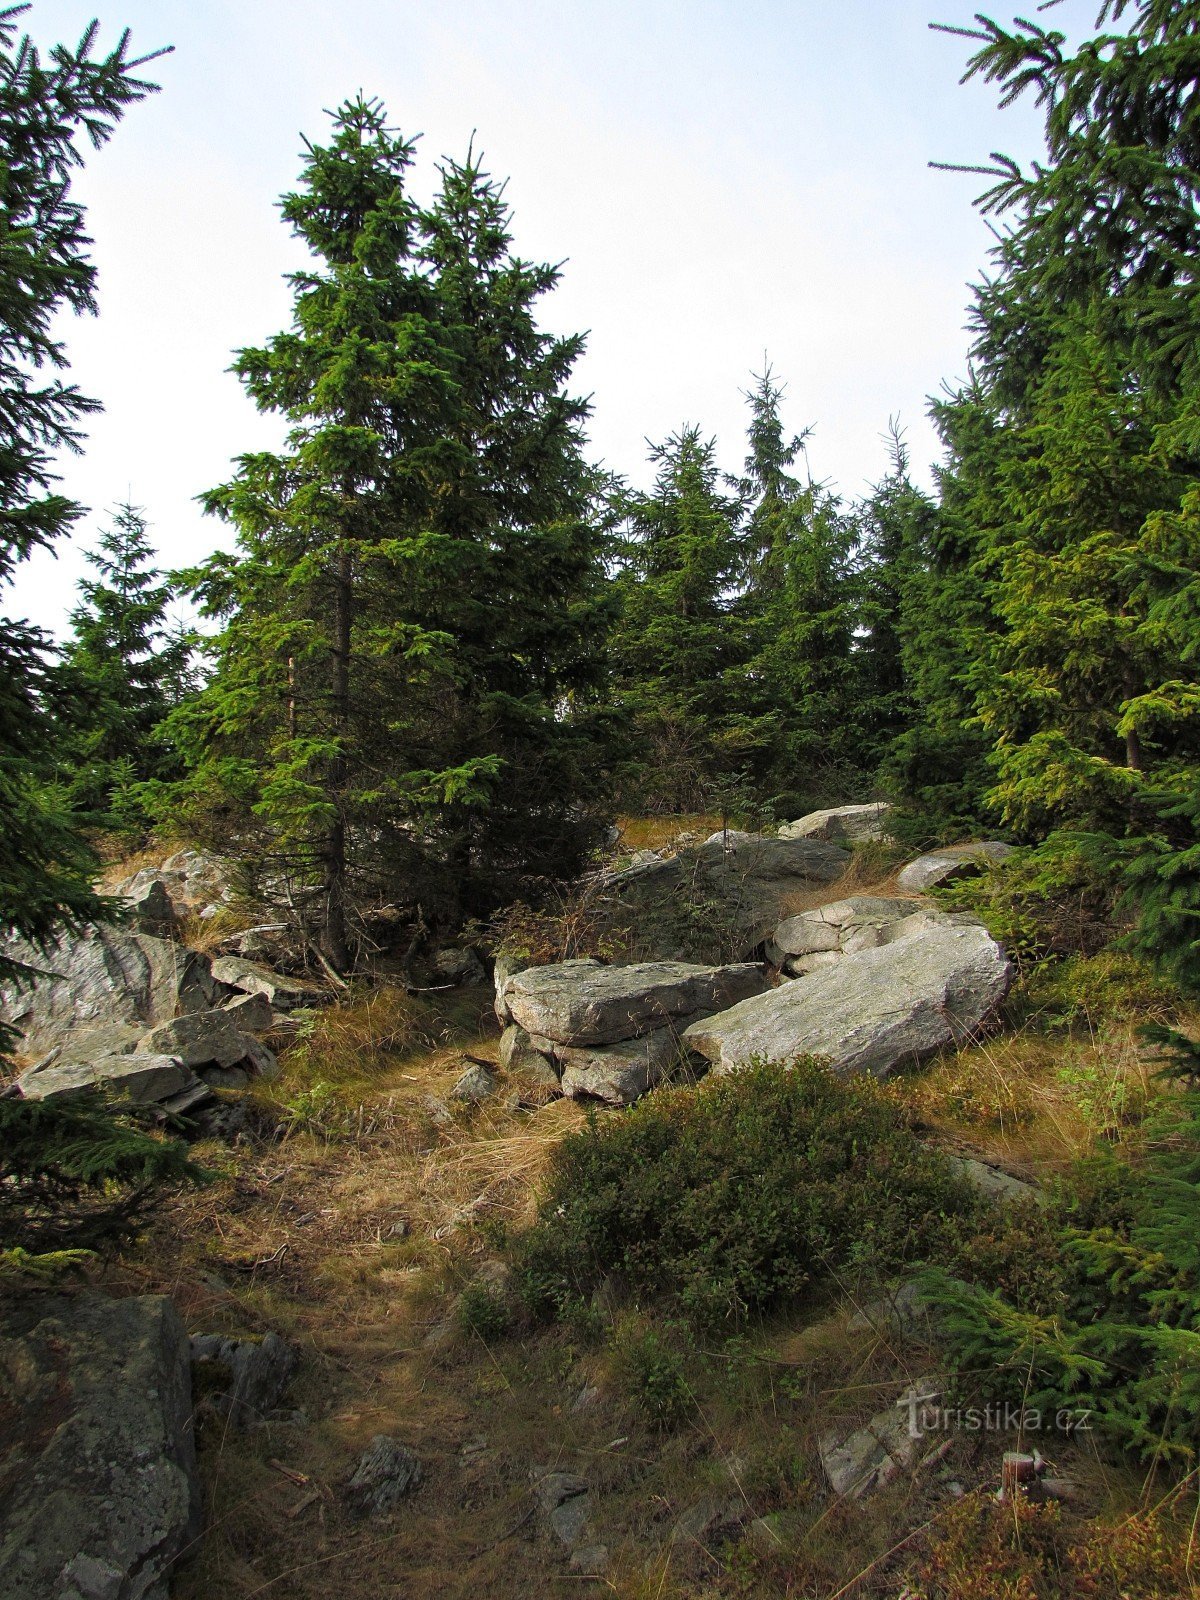 Piedras negras - rocas mirador a una altura de 954 m